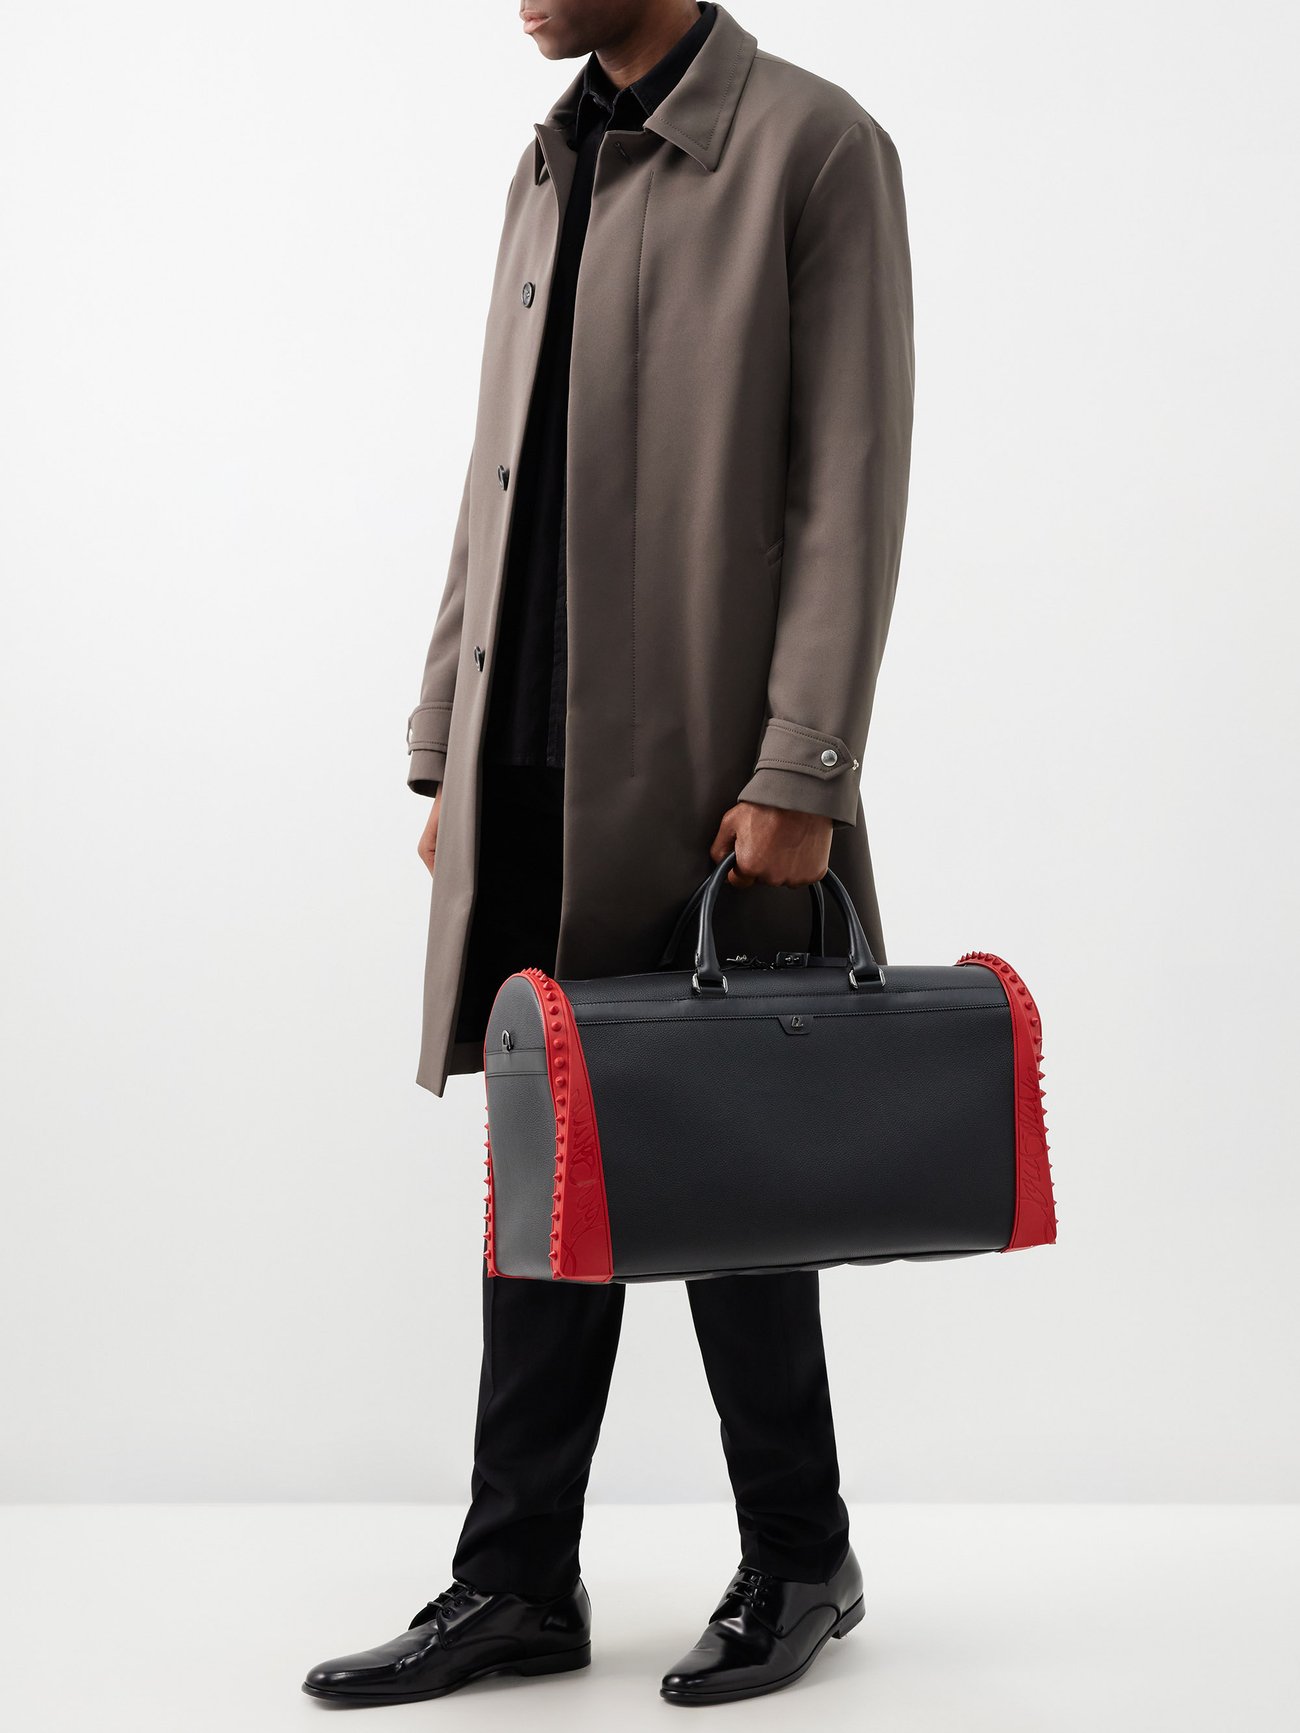 Christian Louboutin Sneakender Travel Bag in White for Men